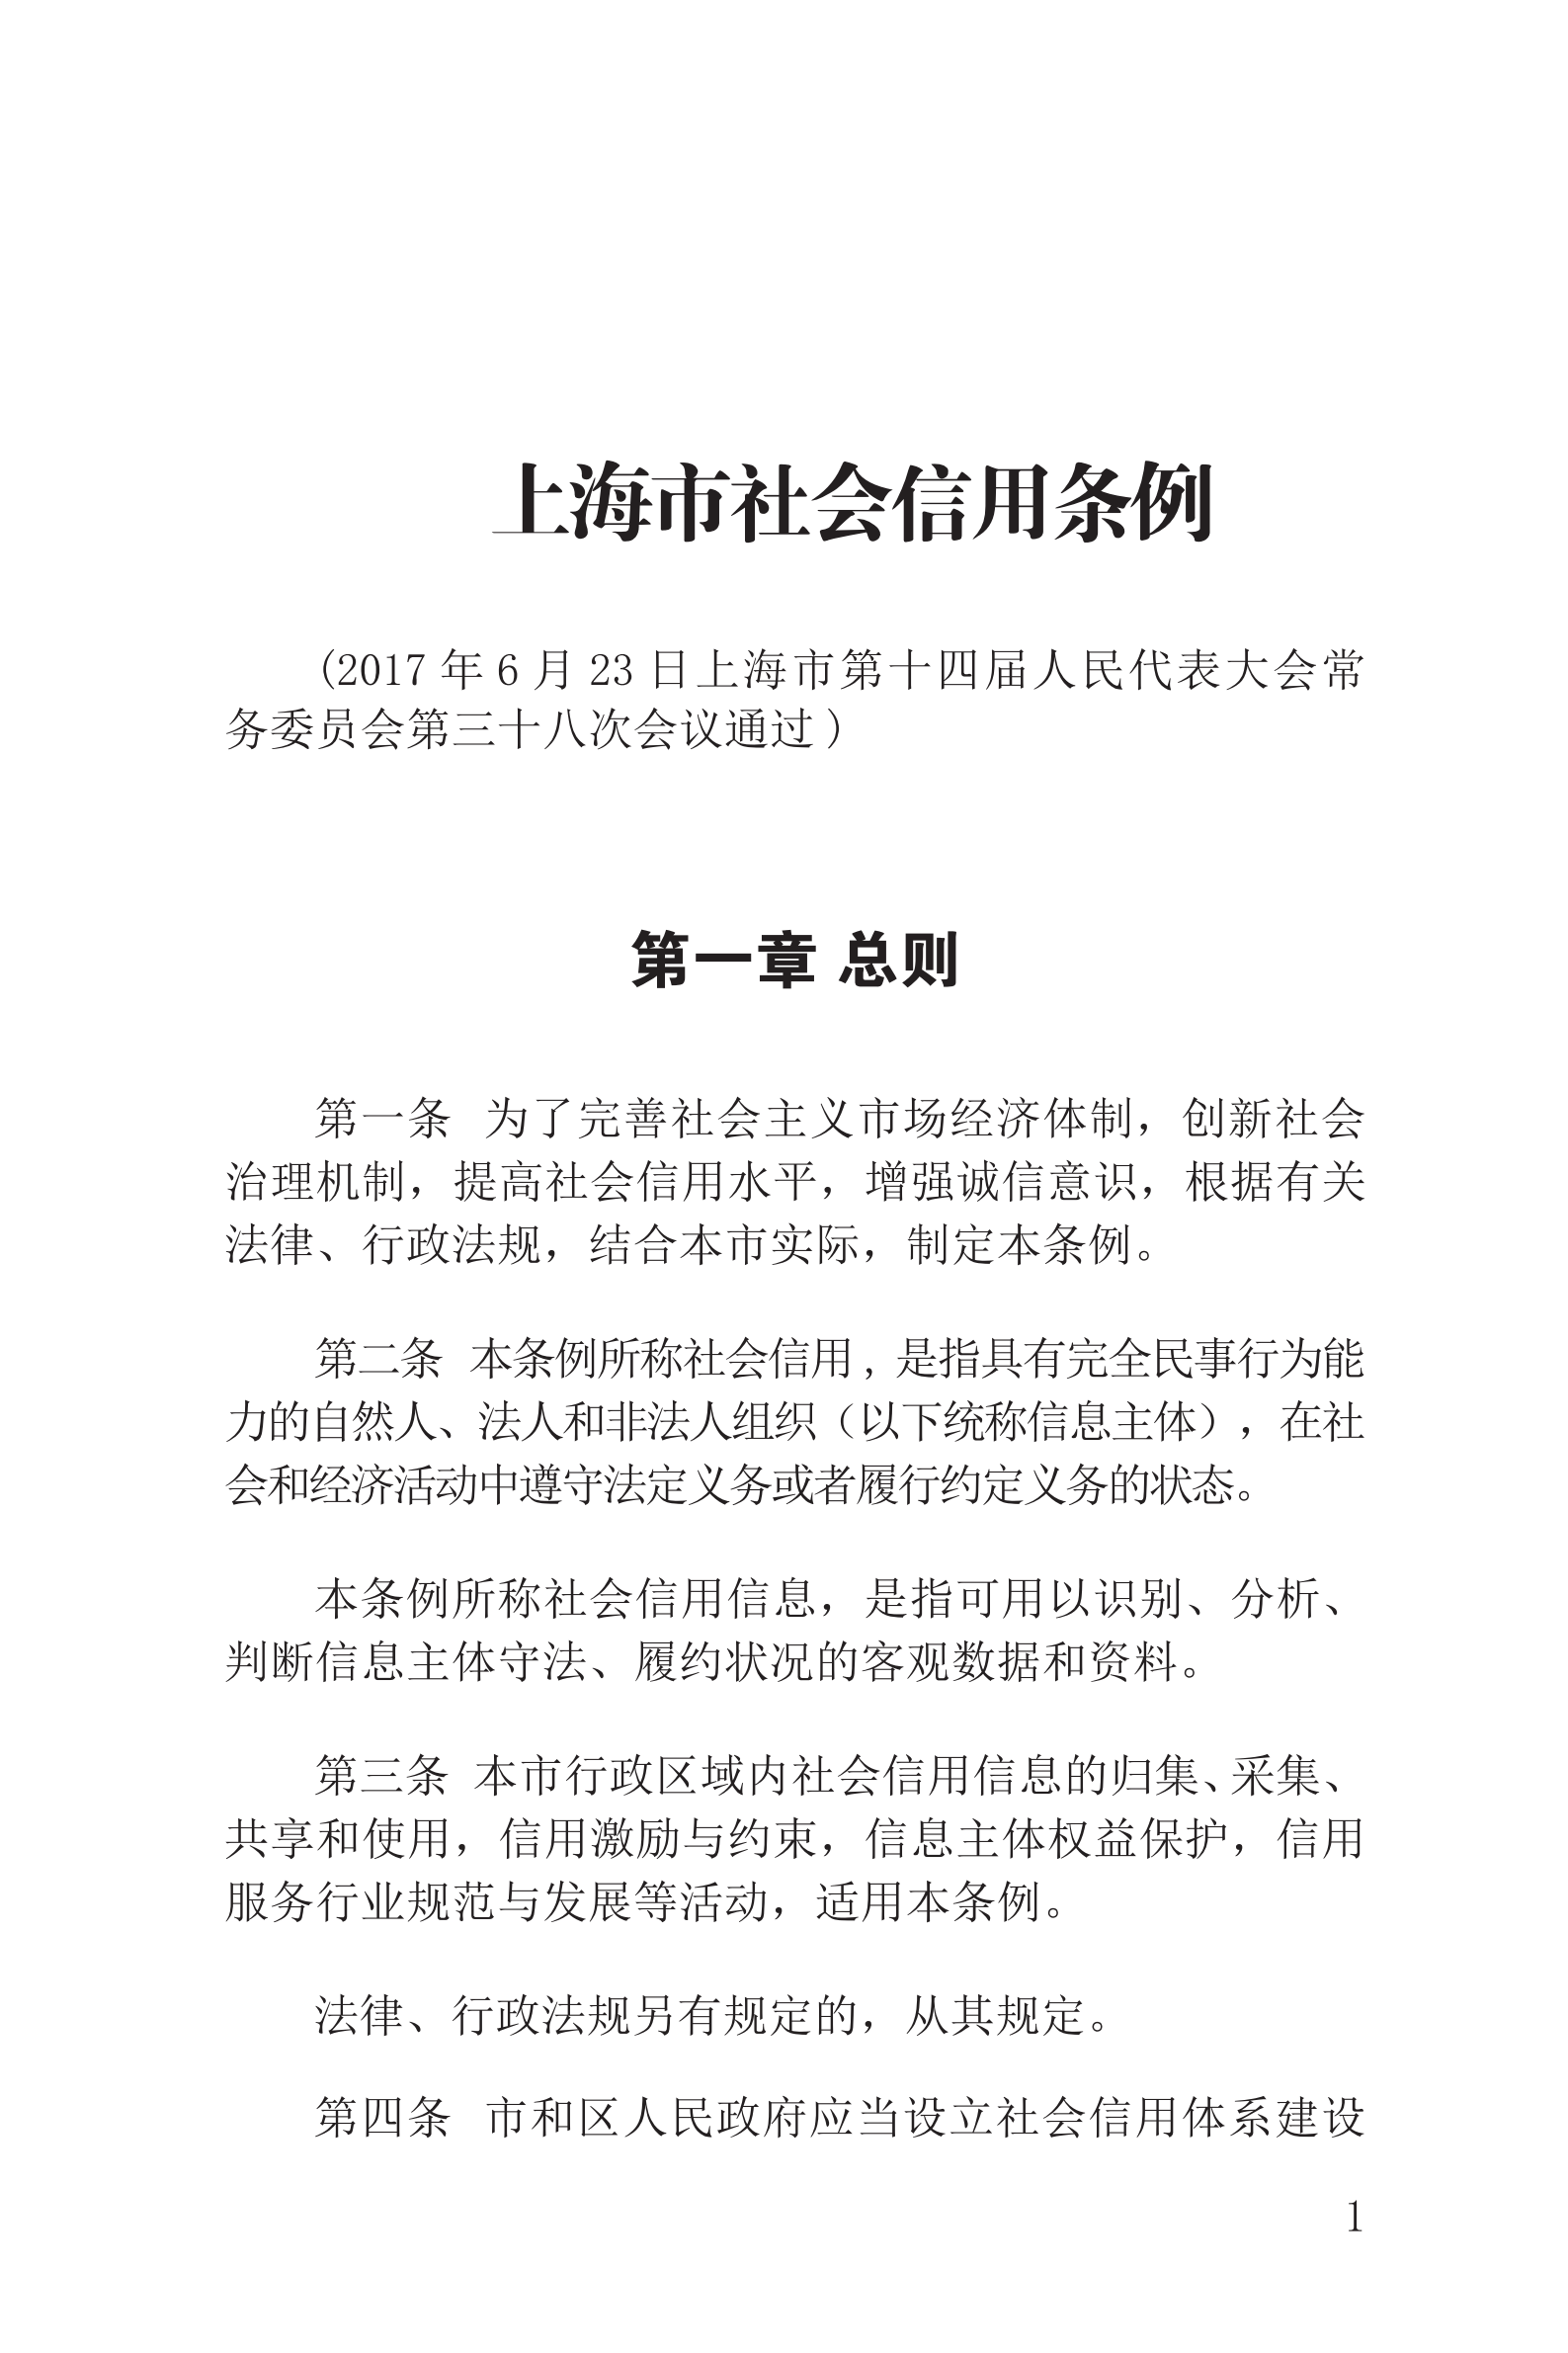 上海市社会信用条例_02.png